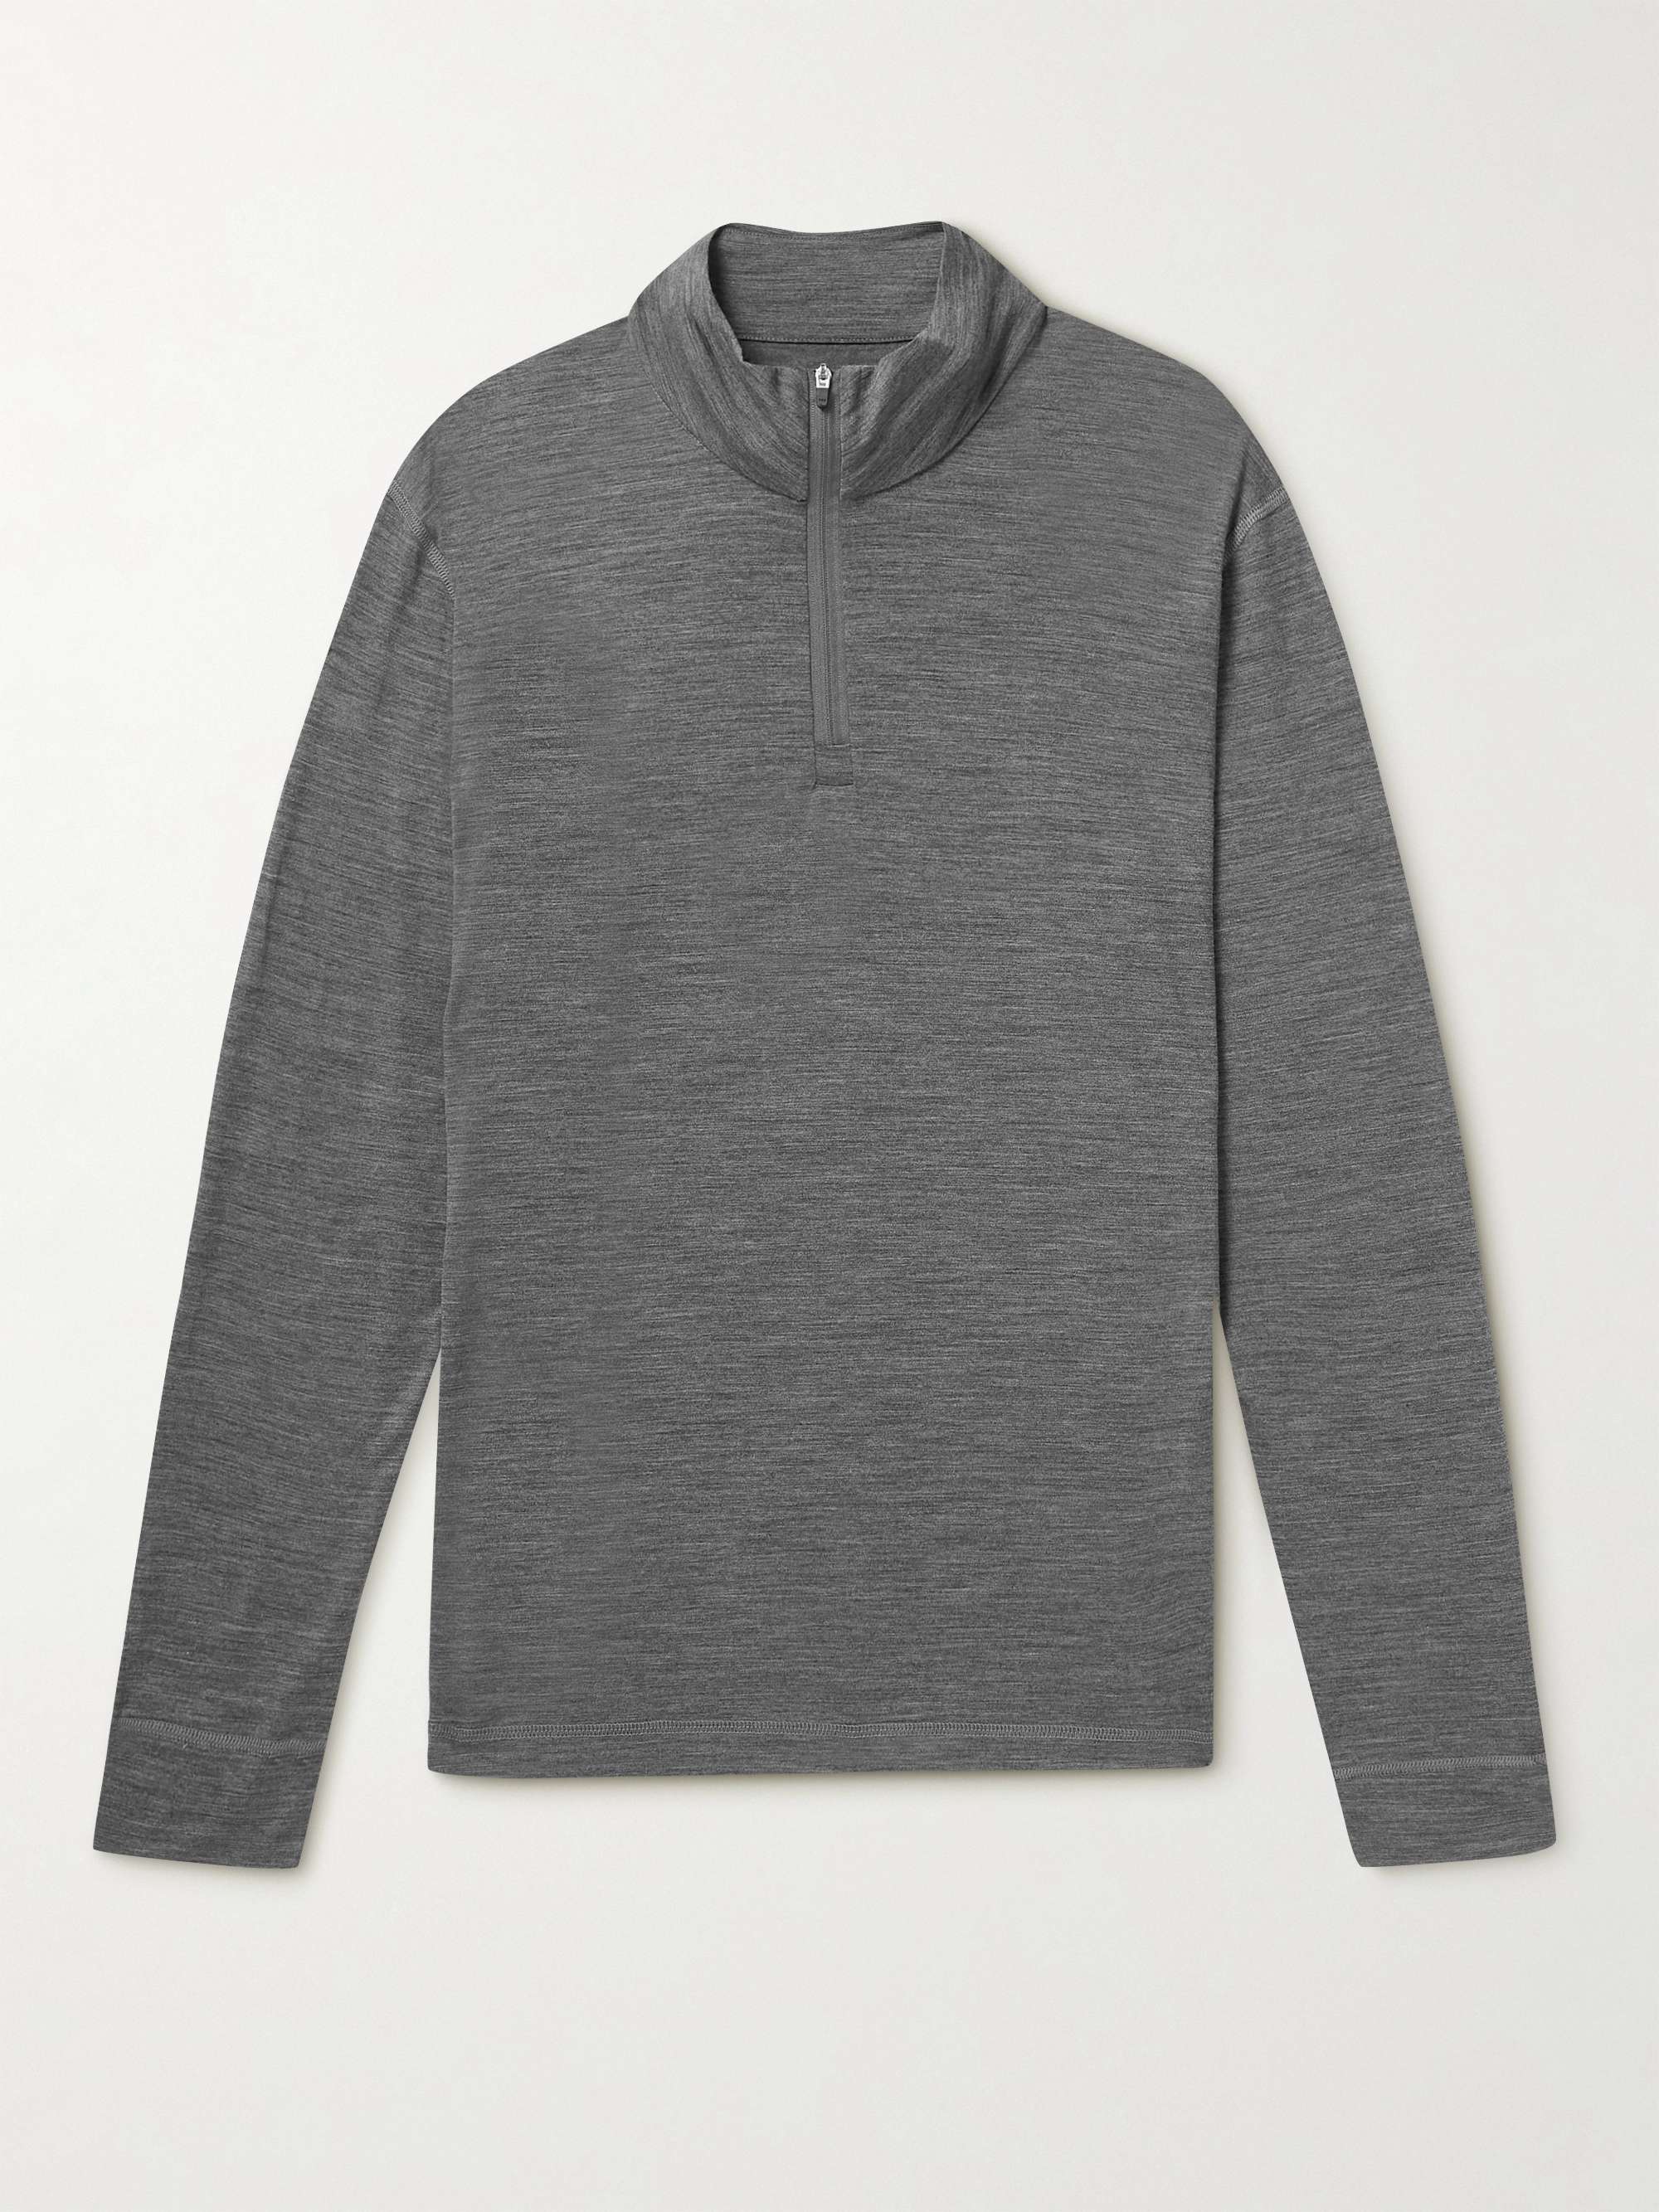 SUNSPEL Merino Wool Half-Zip Sweatshirt